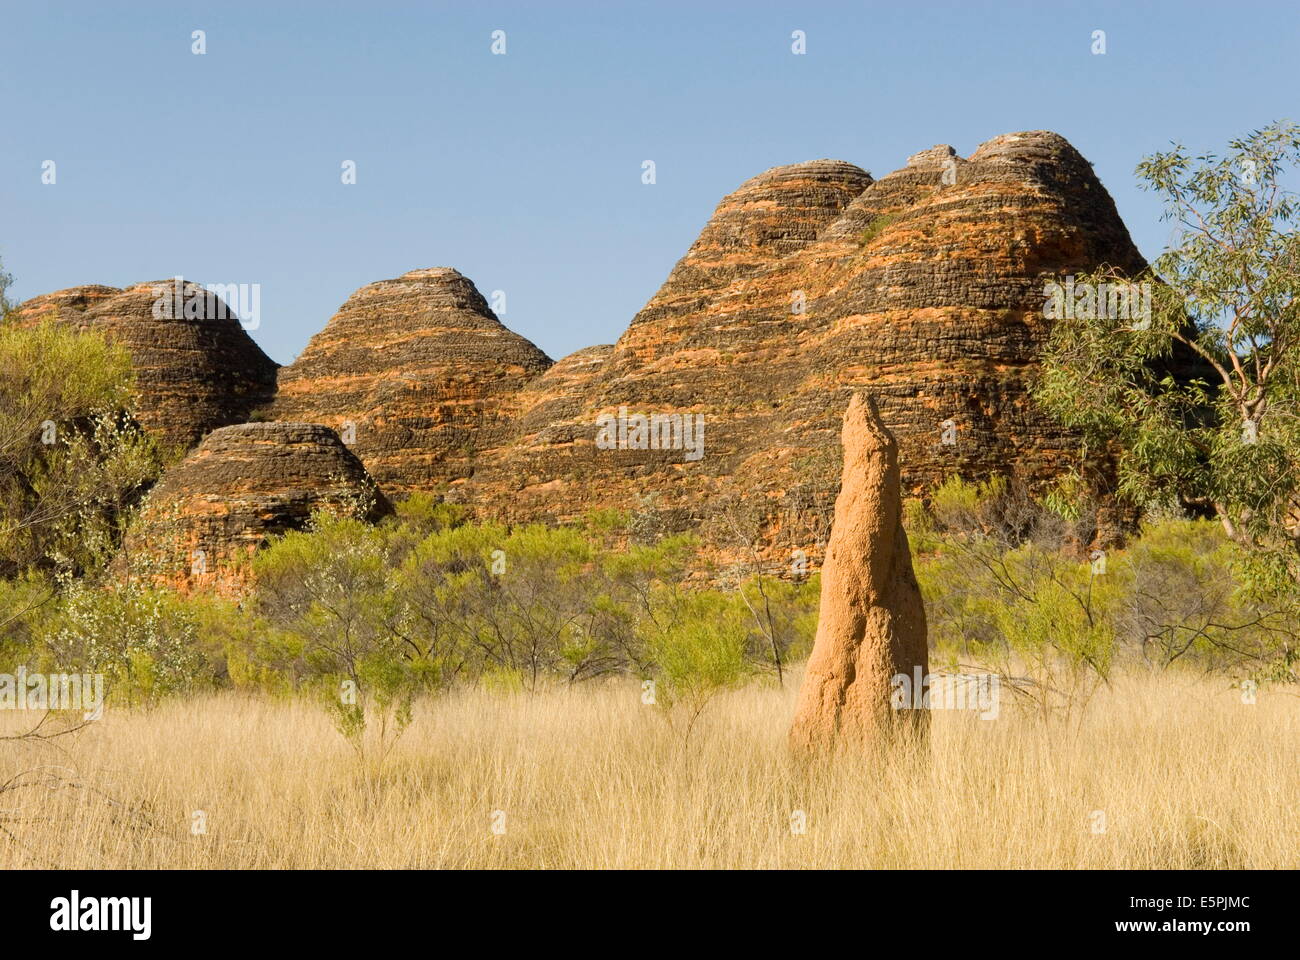 Colinas de piedra arenisca y las termitas en las cúpulas, el Parque Nacional de Purnululu (Bungle Bungle), la UNESCO Sitio, Australia Foto de stock